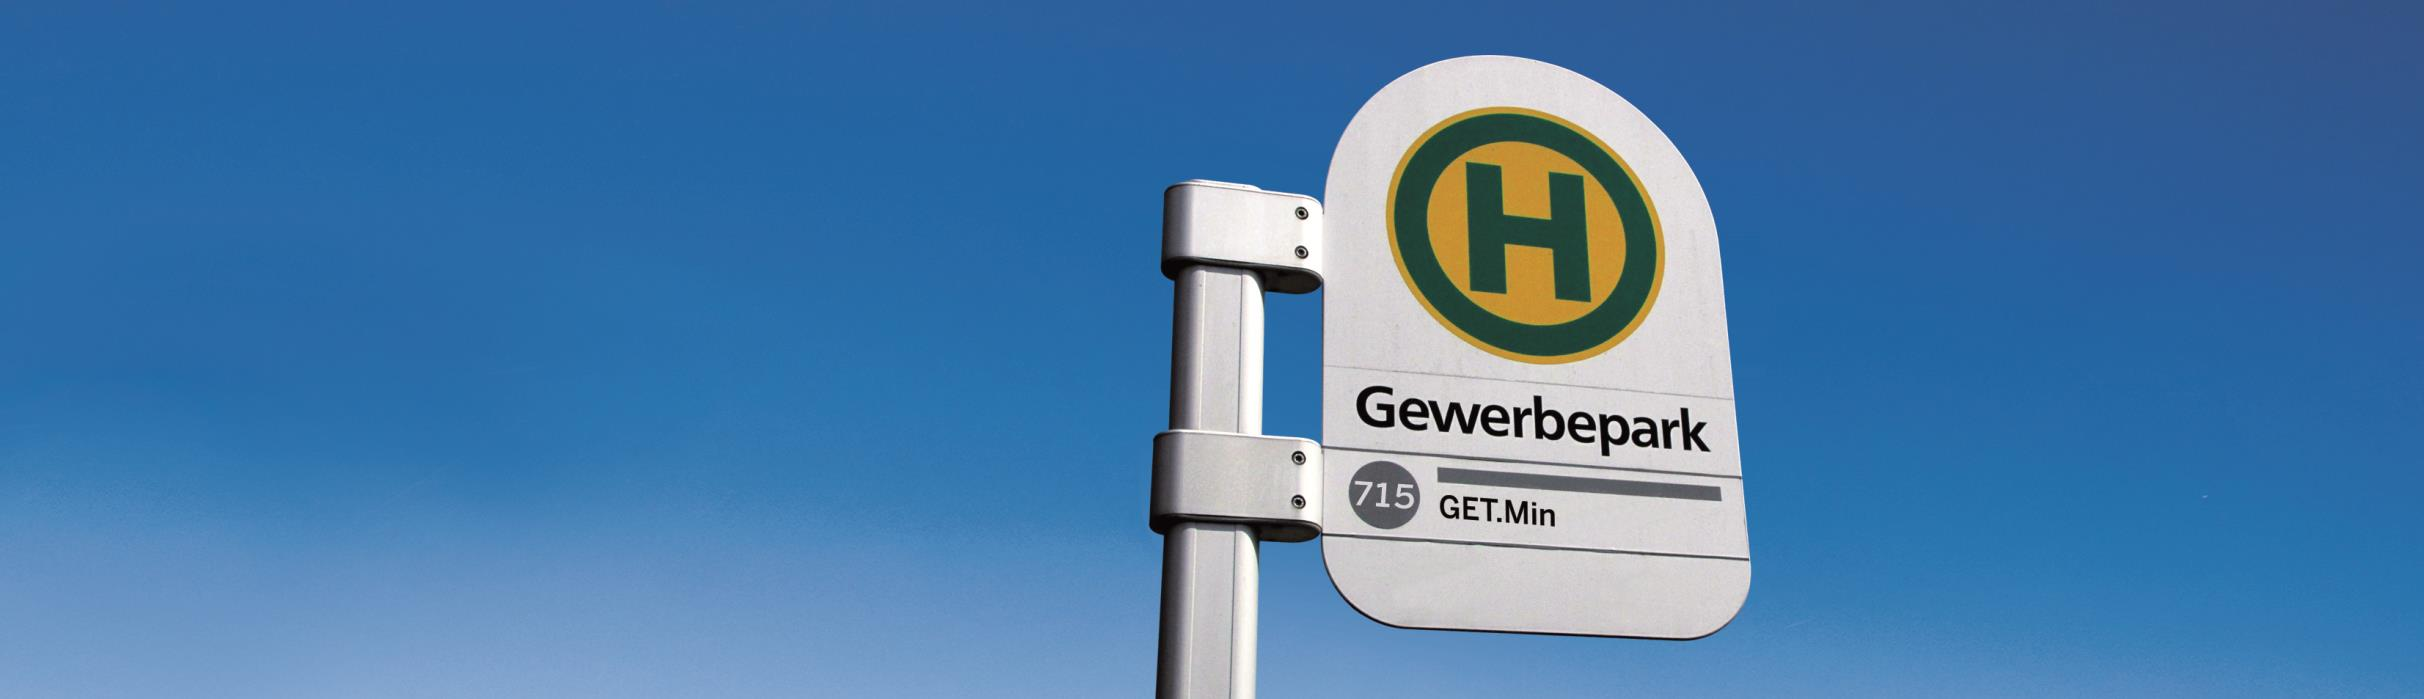 GET.Min Gewerbepark, Energie-, Technologie- und Managementinformationsnetzwerk EnergieAgentur.NRW GET.